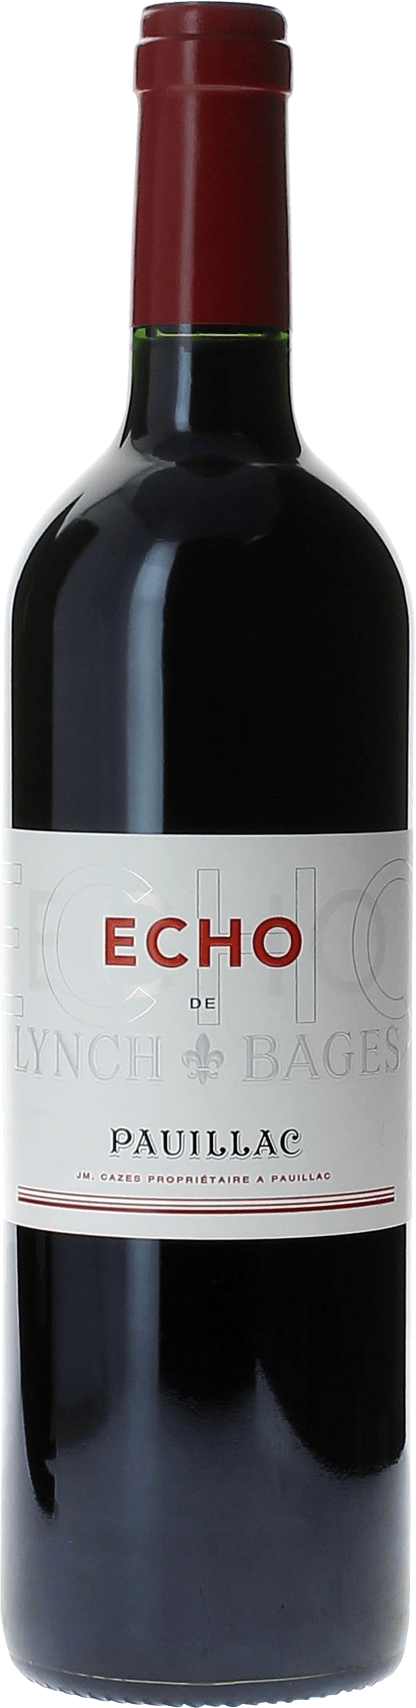 Echo lynch bages 2011 2me vin de LYNCH BAGES Pauillac, Bordeaux rouge